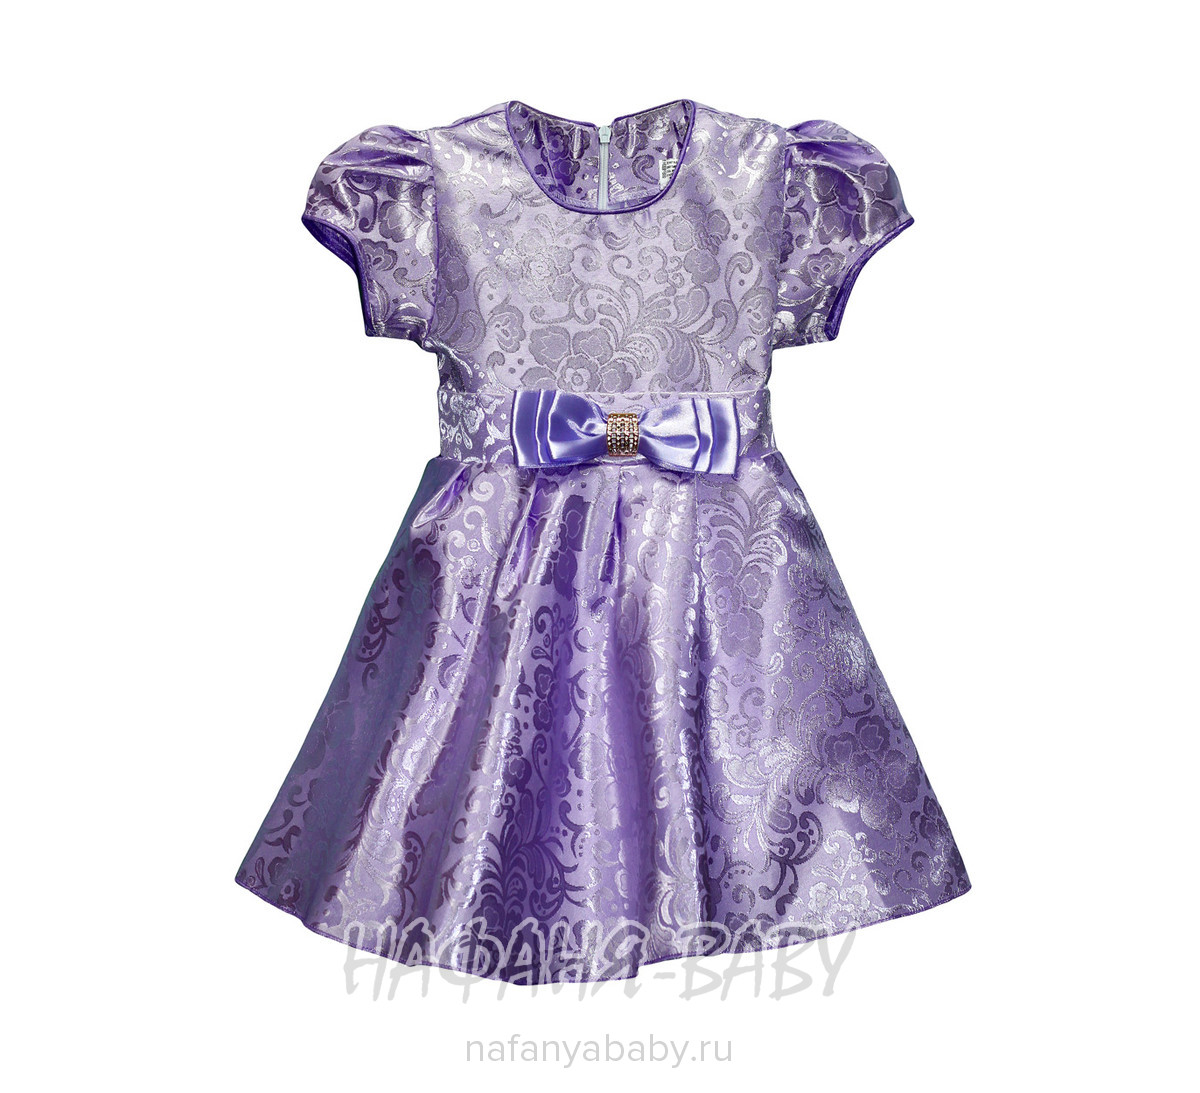 Детское платье KGMART арт: 2147, 1-4 года, 5-9 лет, оптом 